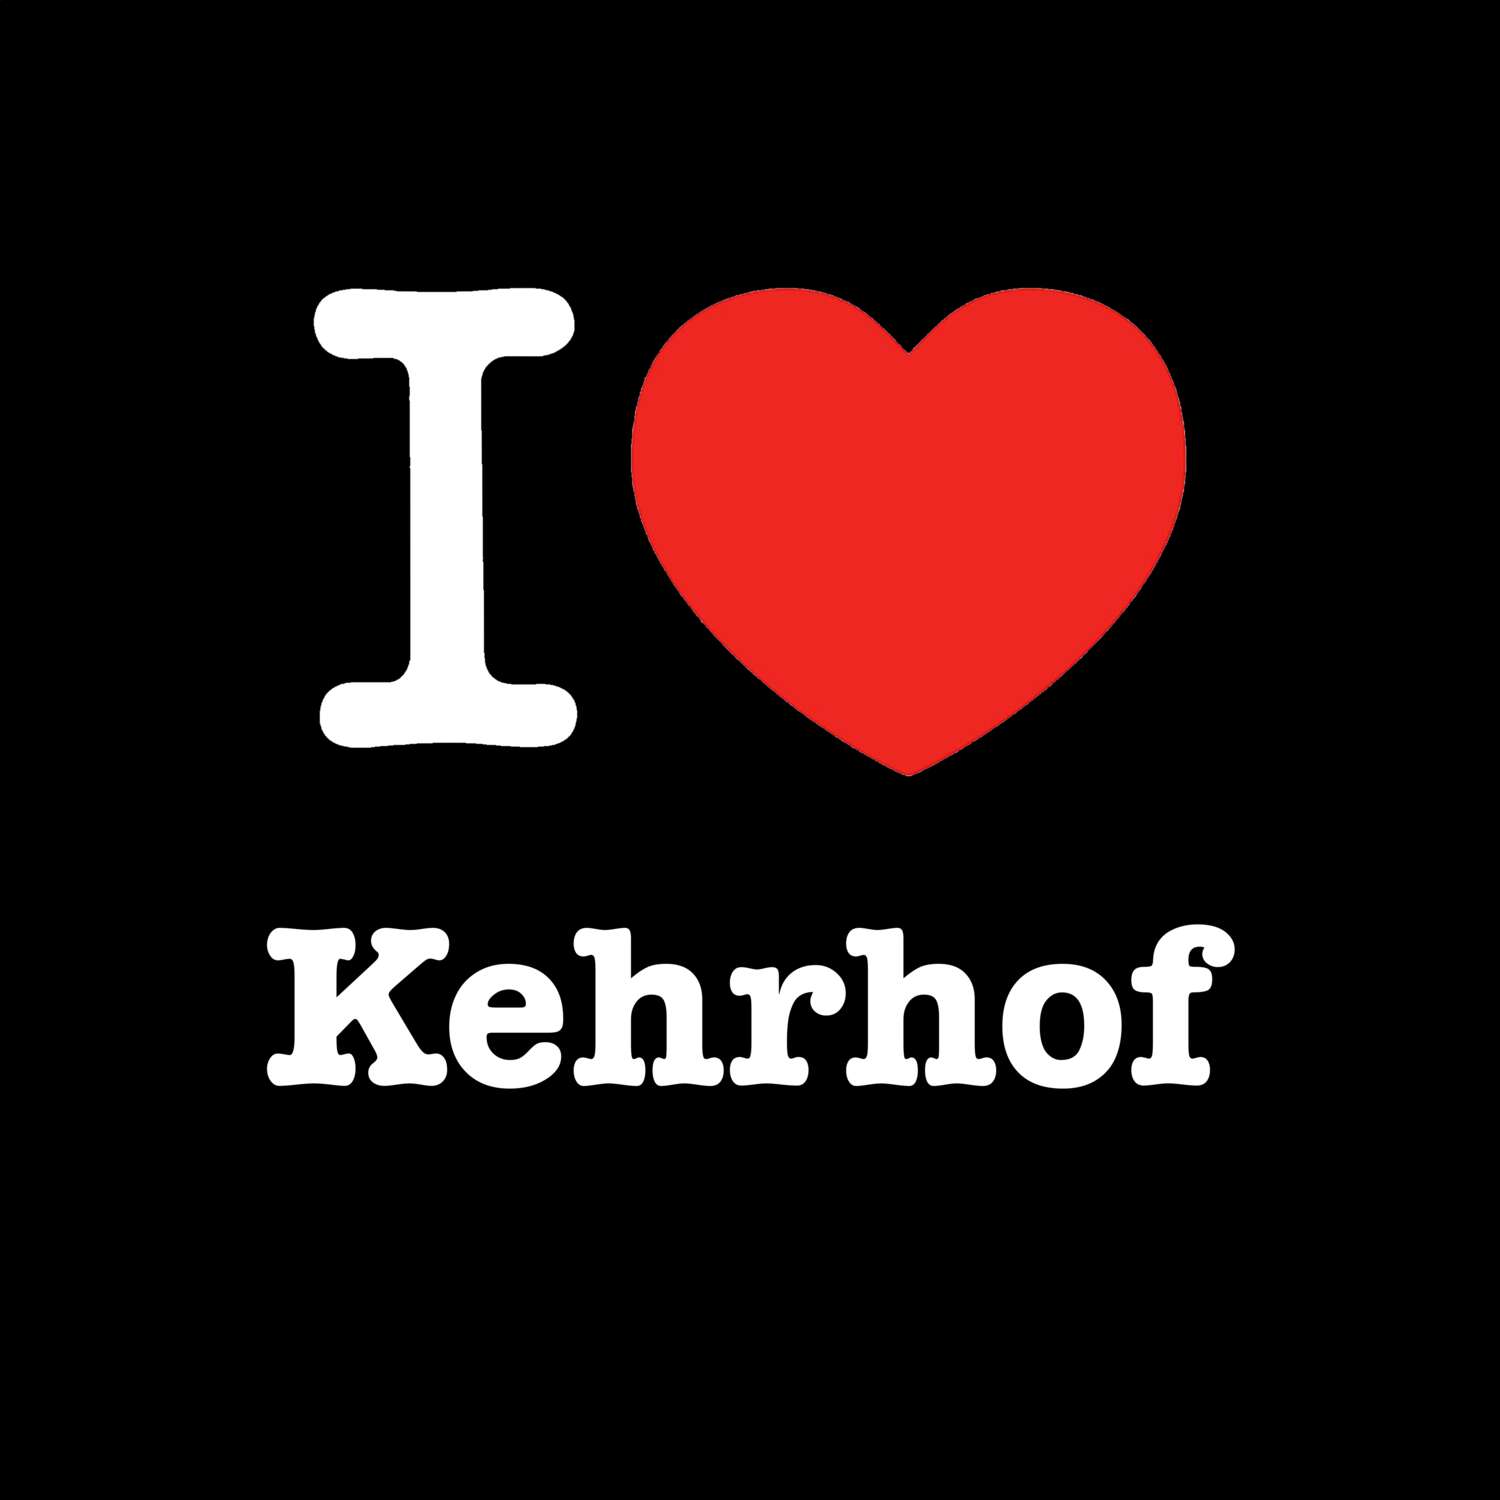 Kehrhof T-Shirt »I love«